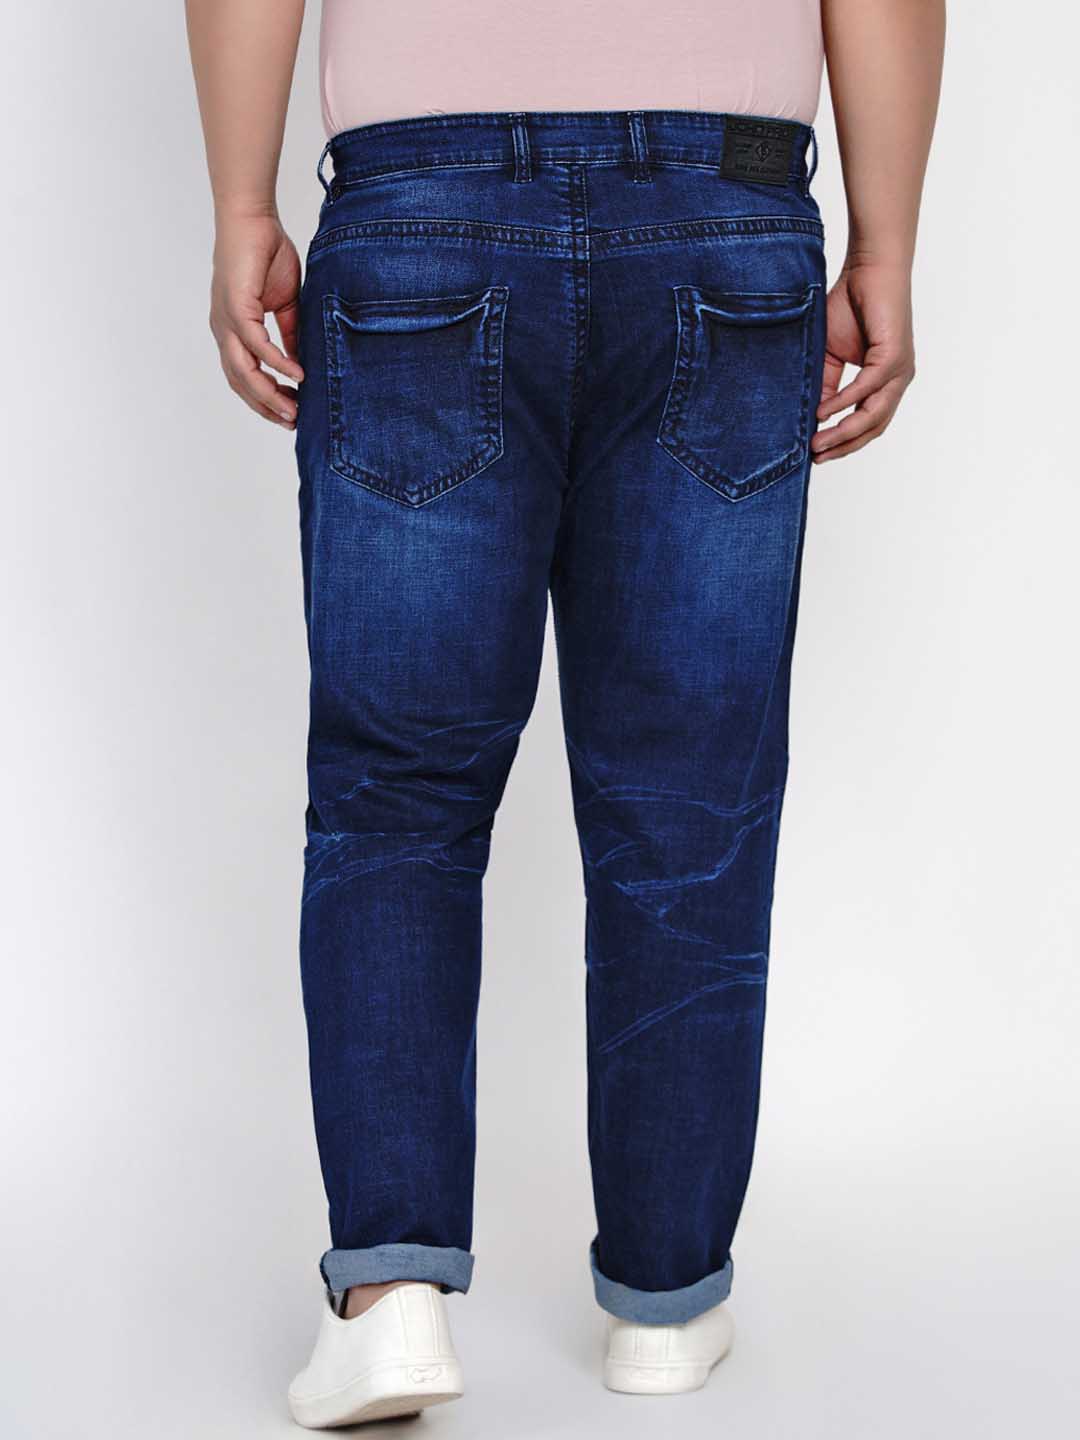 bottomwear/jeans/JPJ12130/jpj12130-4.jpg